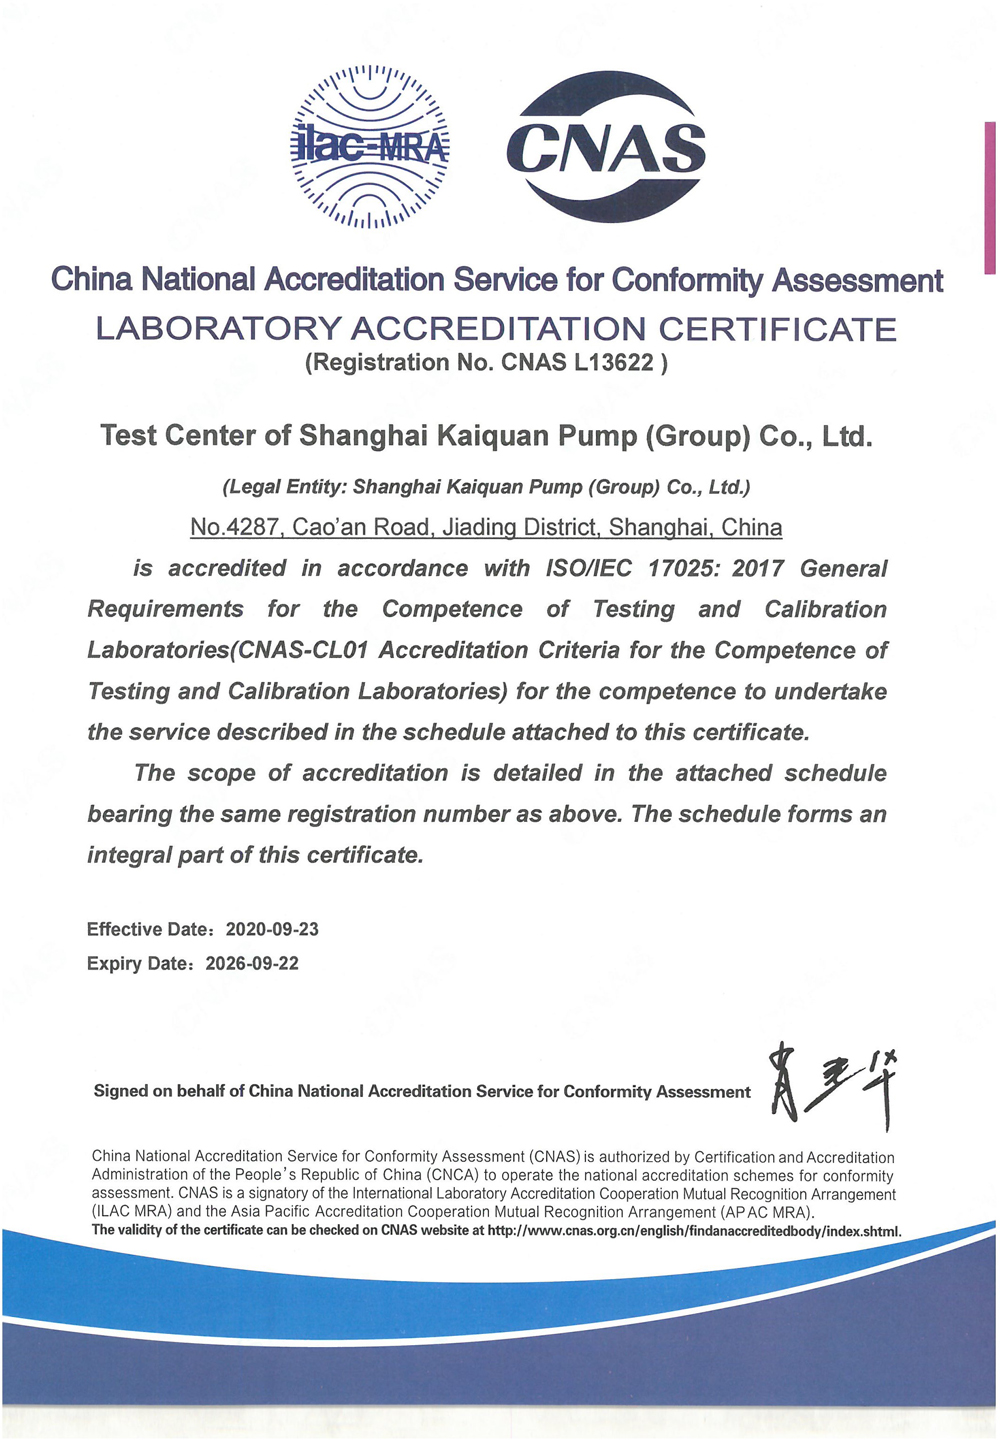 上海凯泉-cnas证书英文版-有效期至20260922